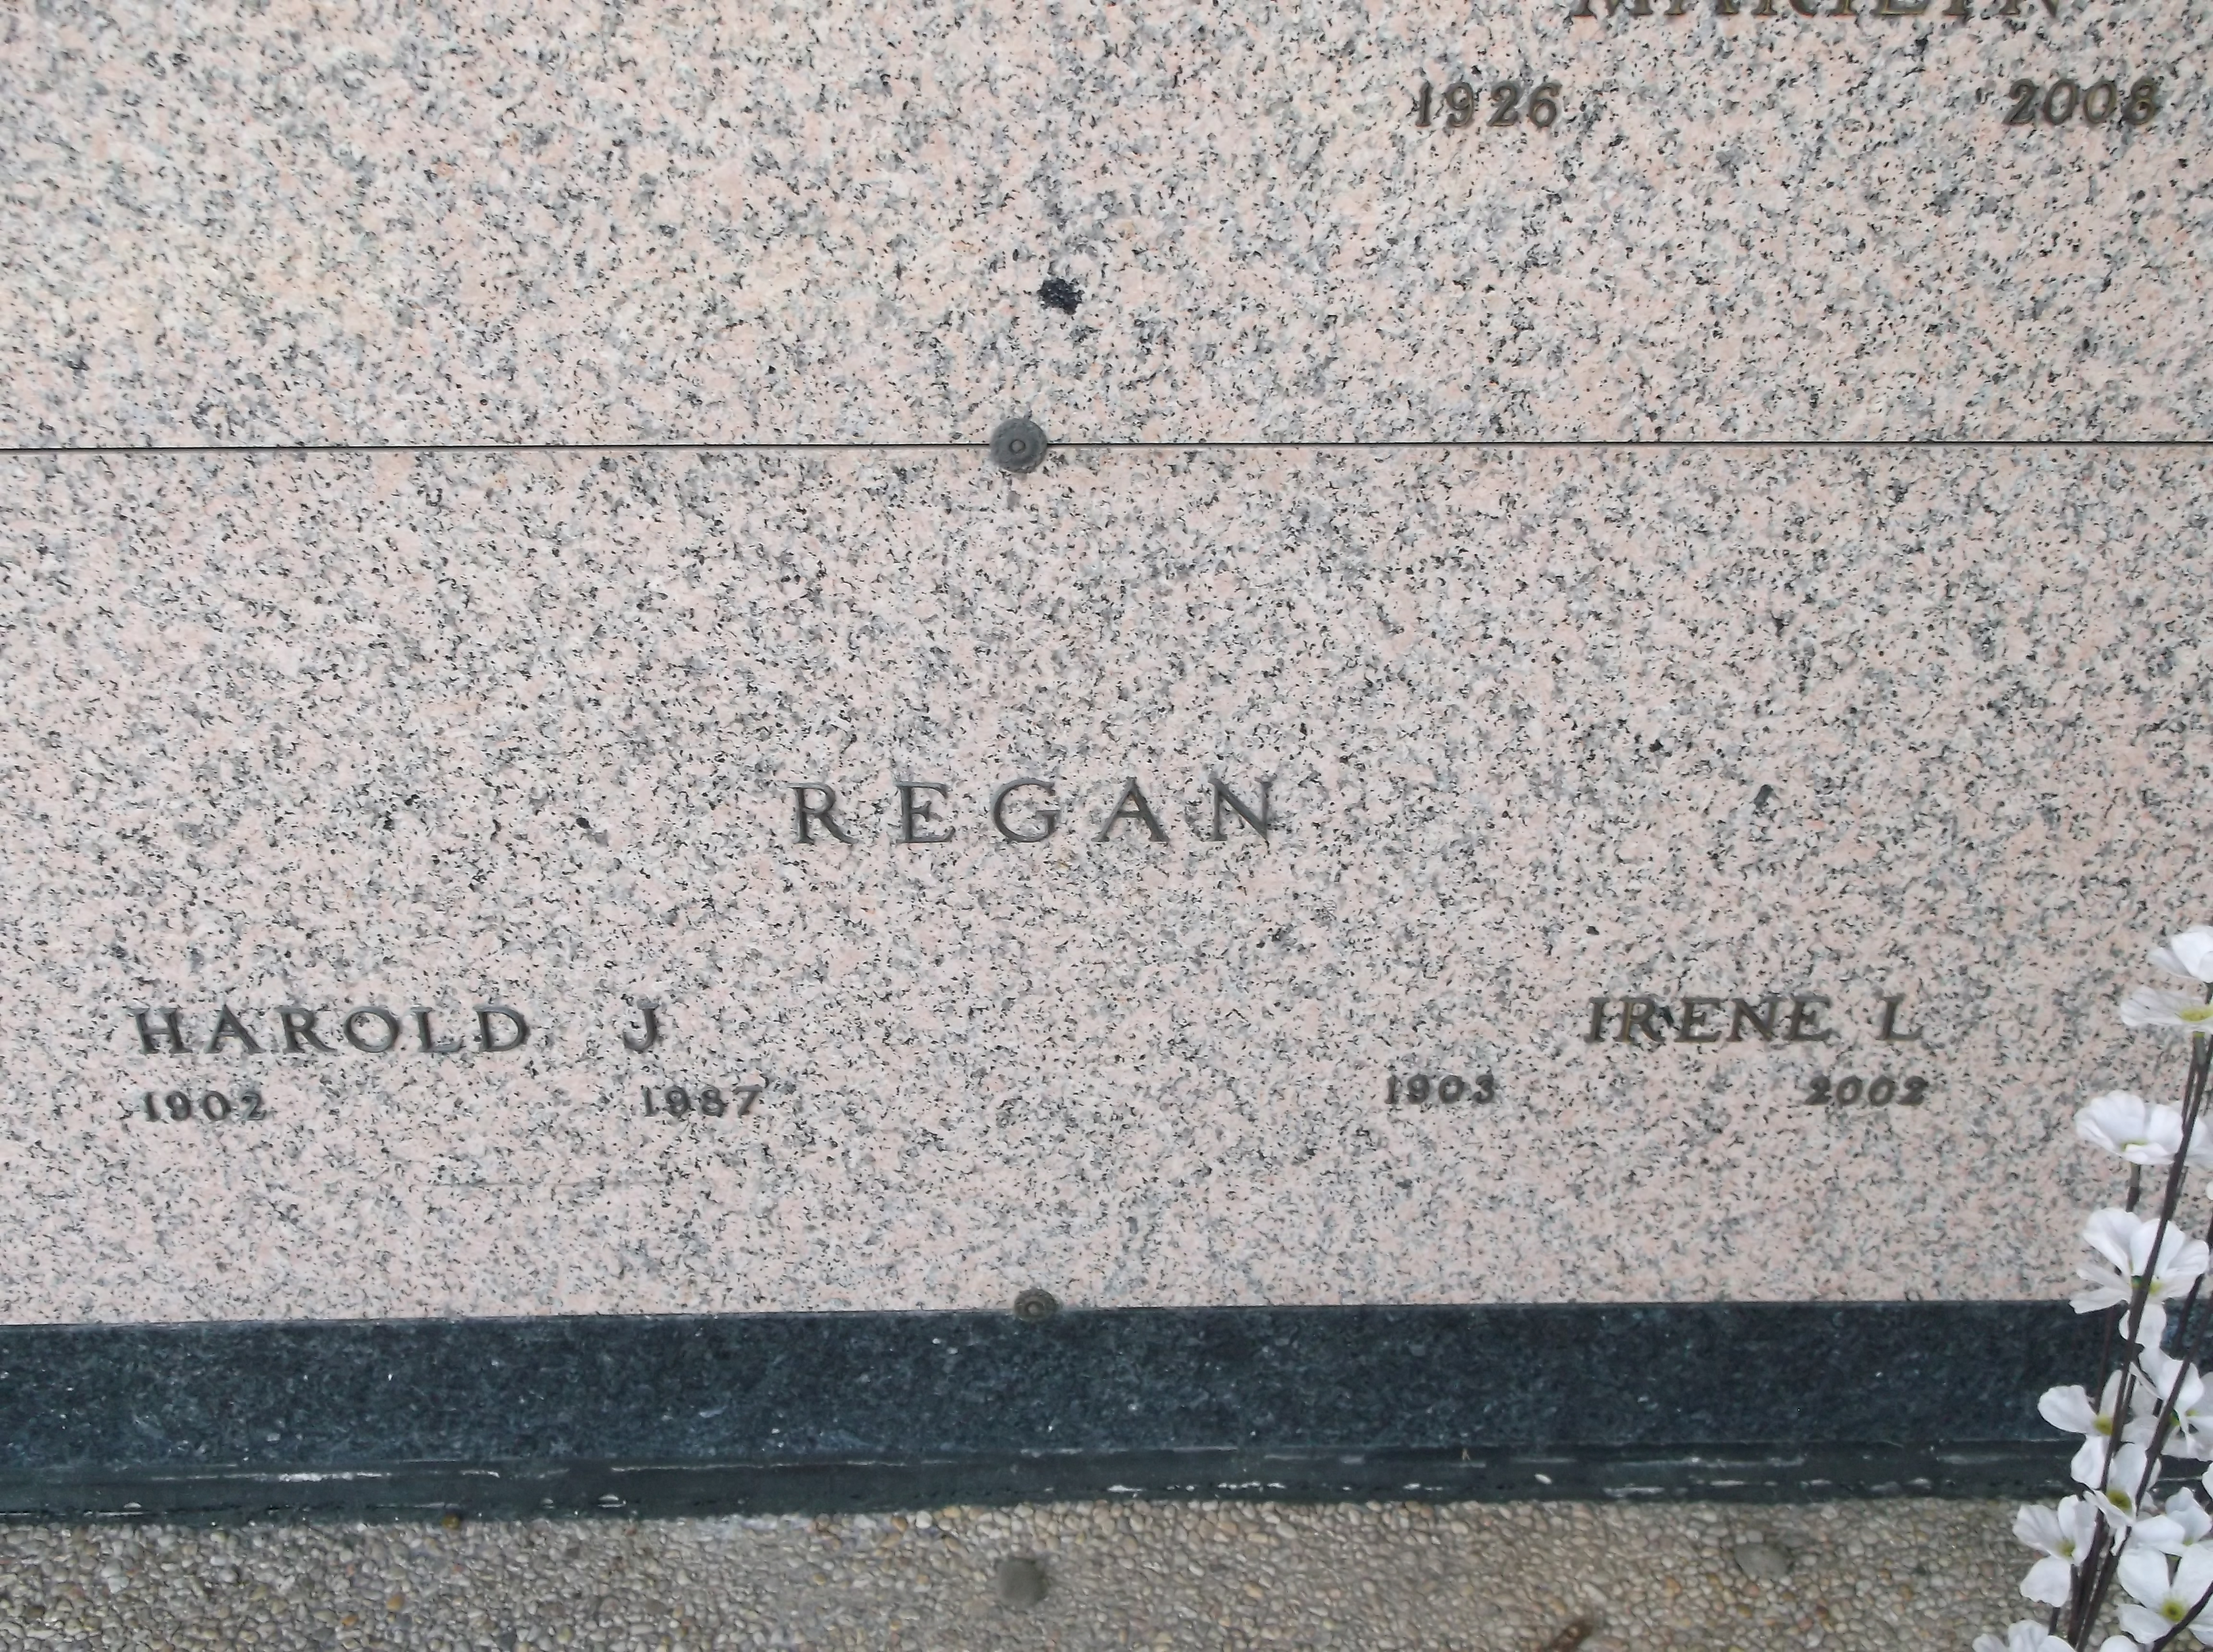 Harold J Regan